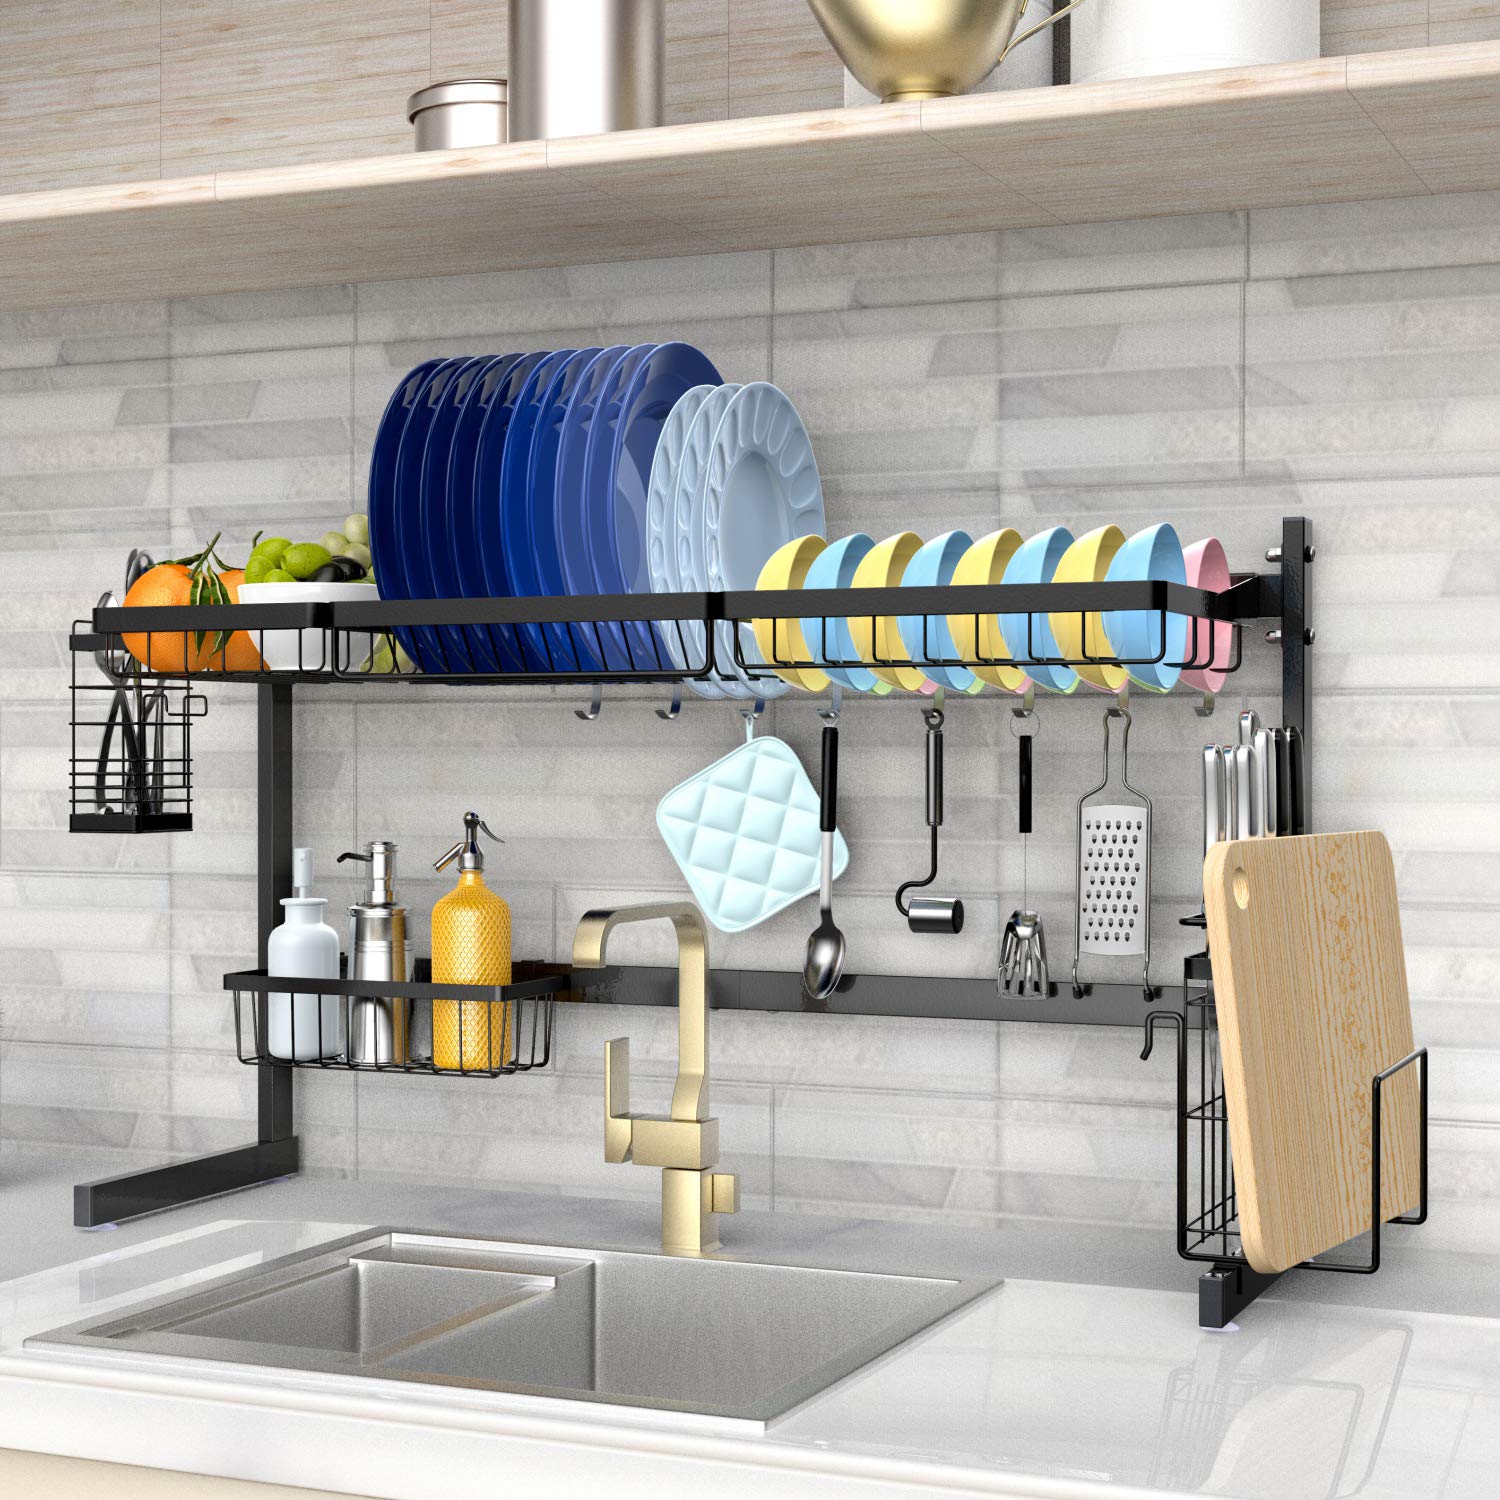 Bồn rửa chén và giá đỡ 2 trong 1 Langria giúp thu gọn tối đa không gian nhà bếp của bạn.